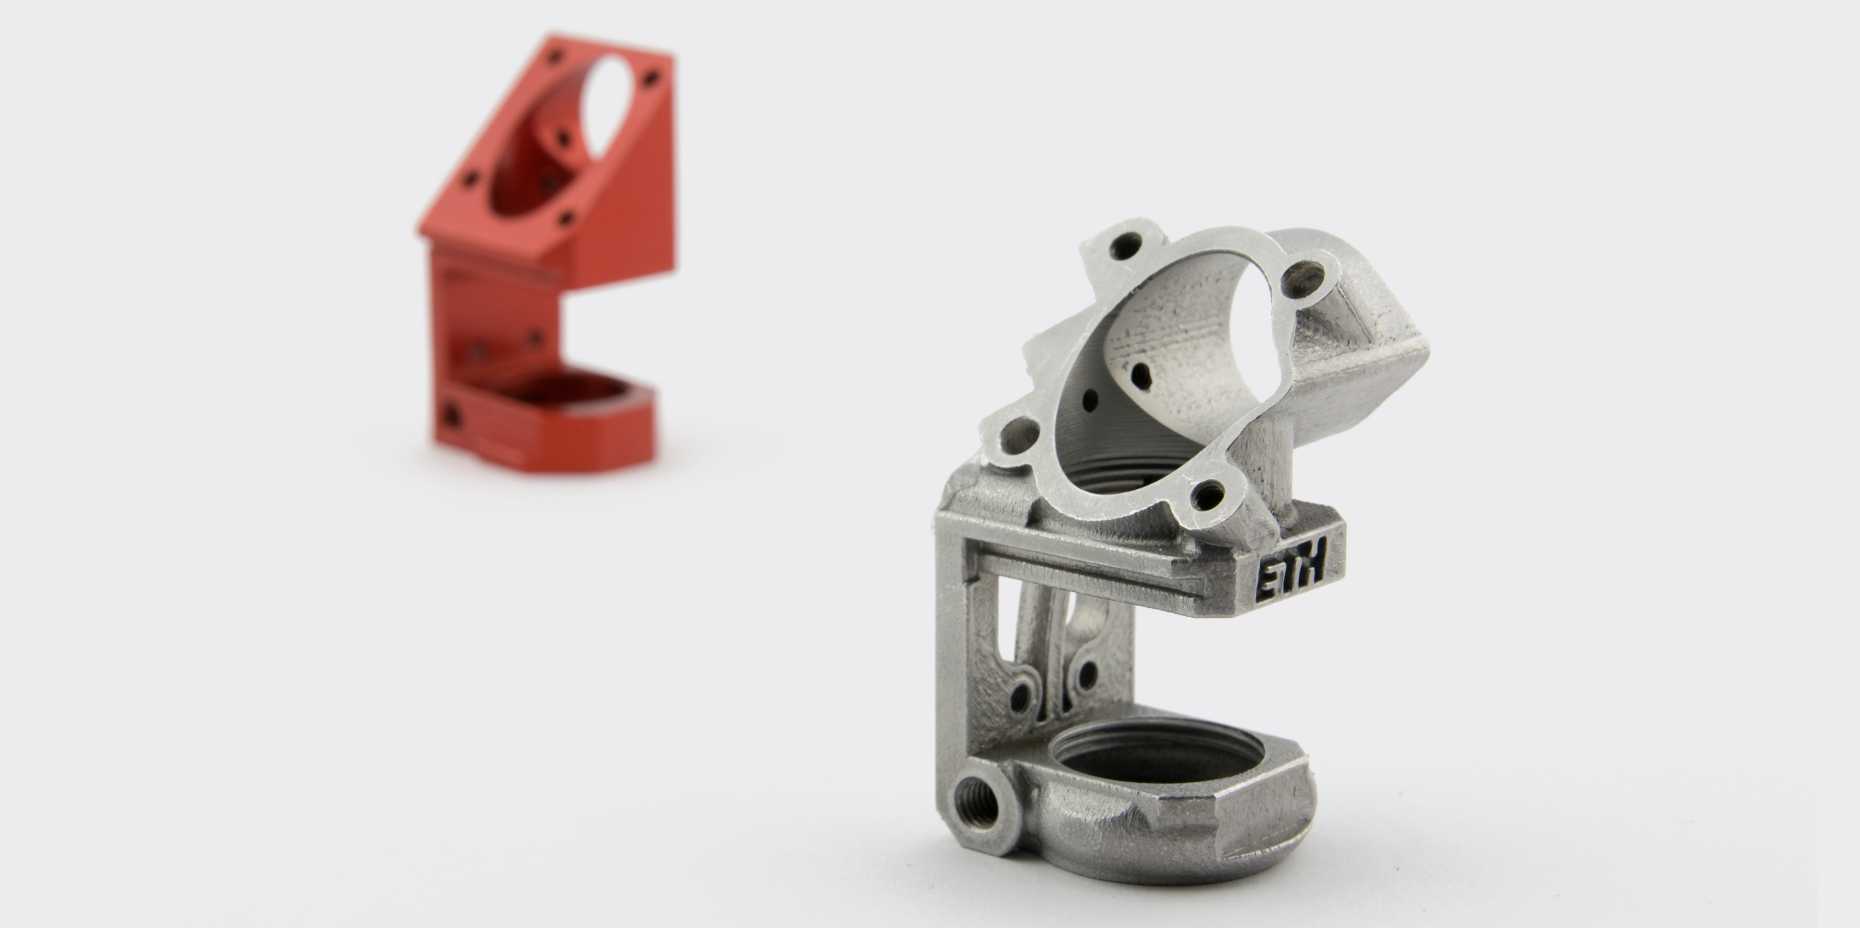 Vergr?sserte Ansicht: Spezifisch für 3D-Druck konstruiertes Bauteil. (Bild: PDZ Product Development Group Zurich)